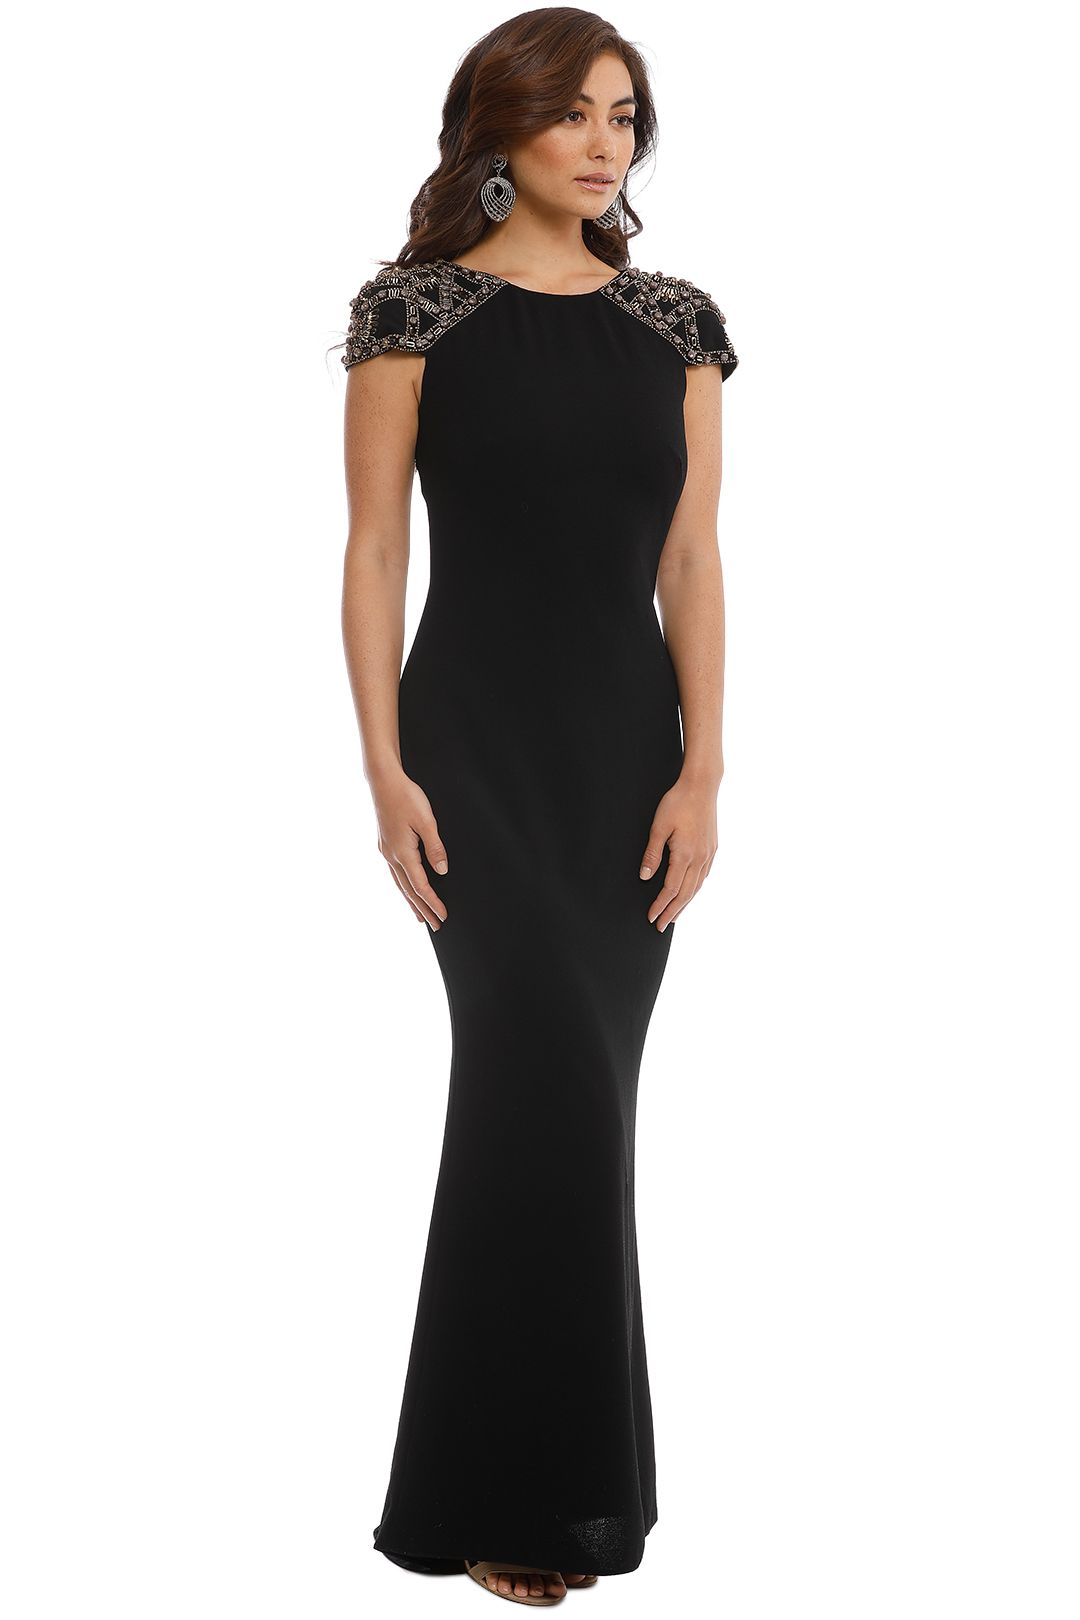 Embellished Gown- Black by Badgley Mischka for Rent | GlamCorner